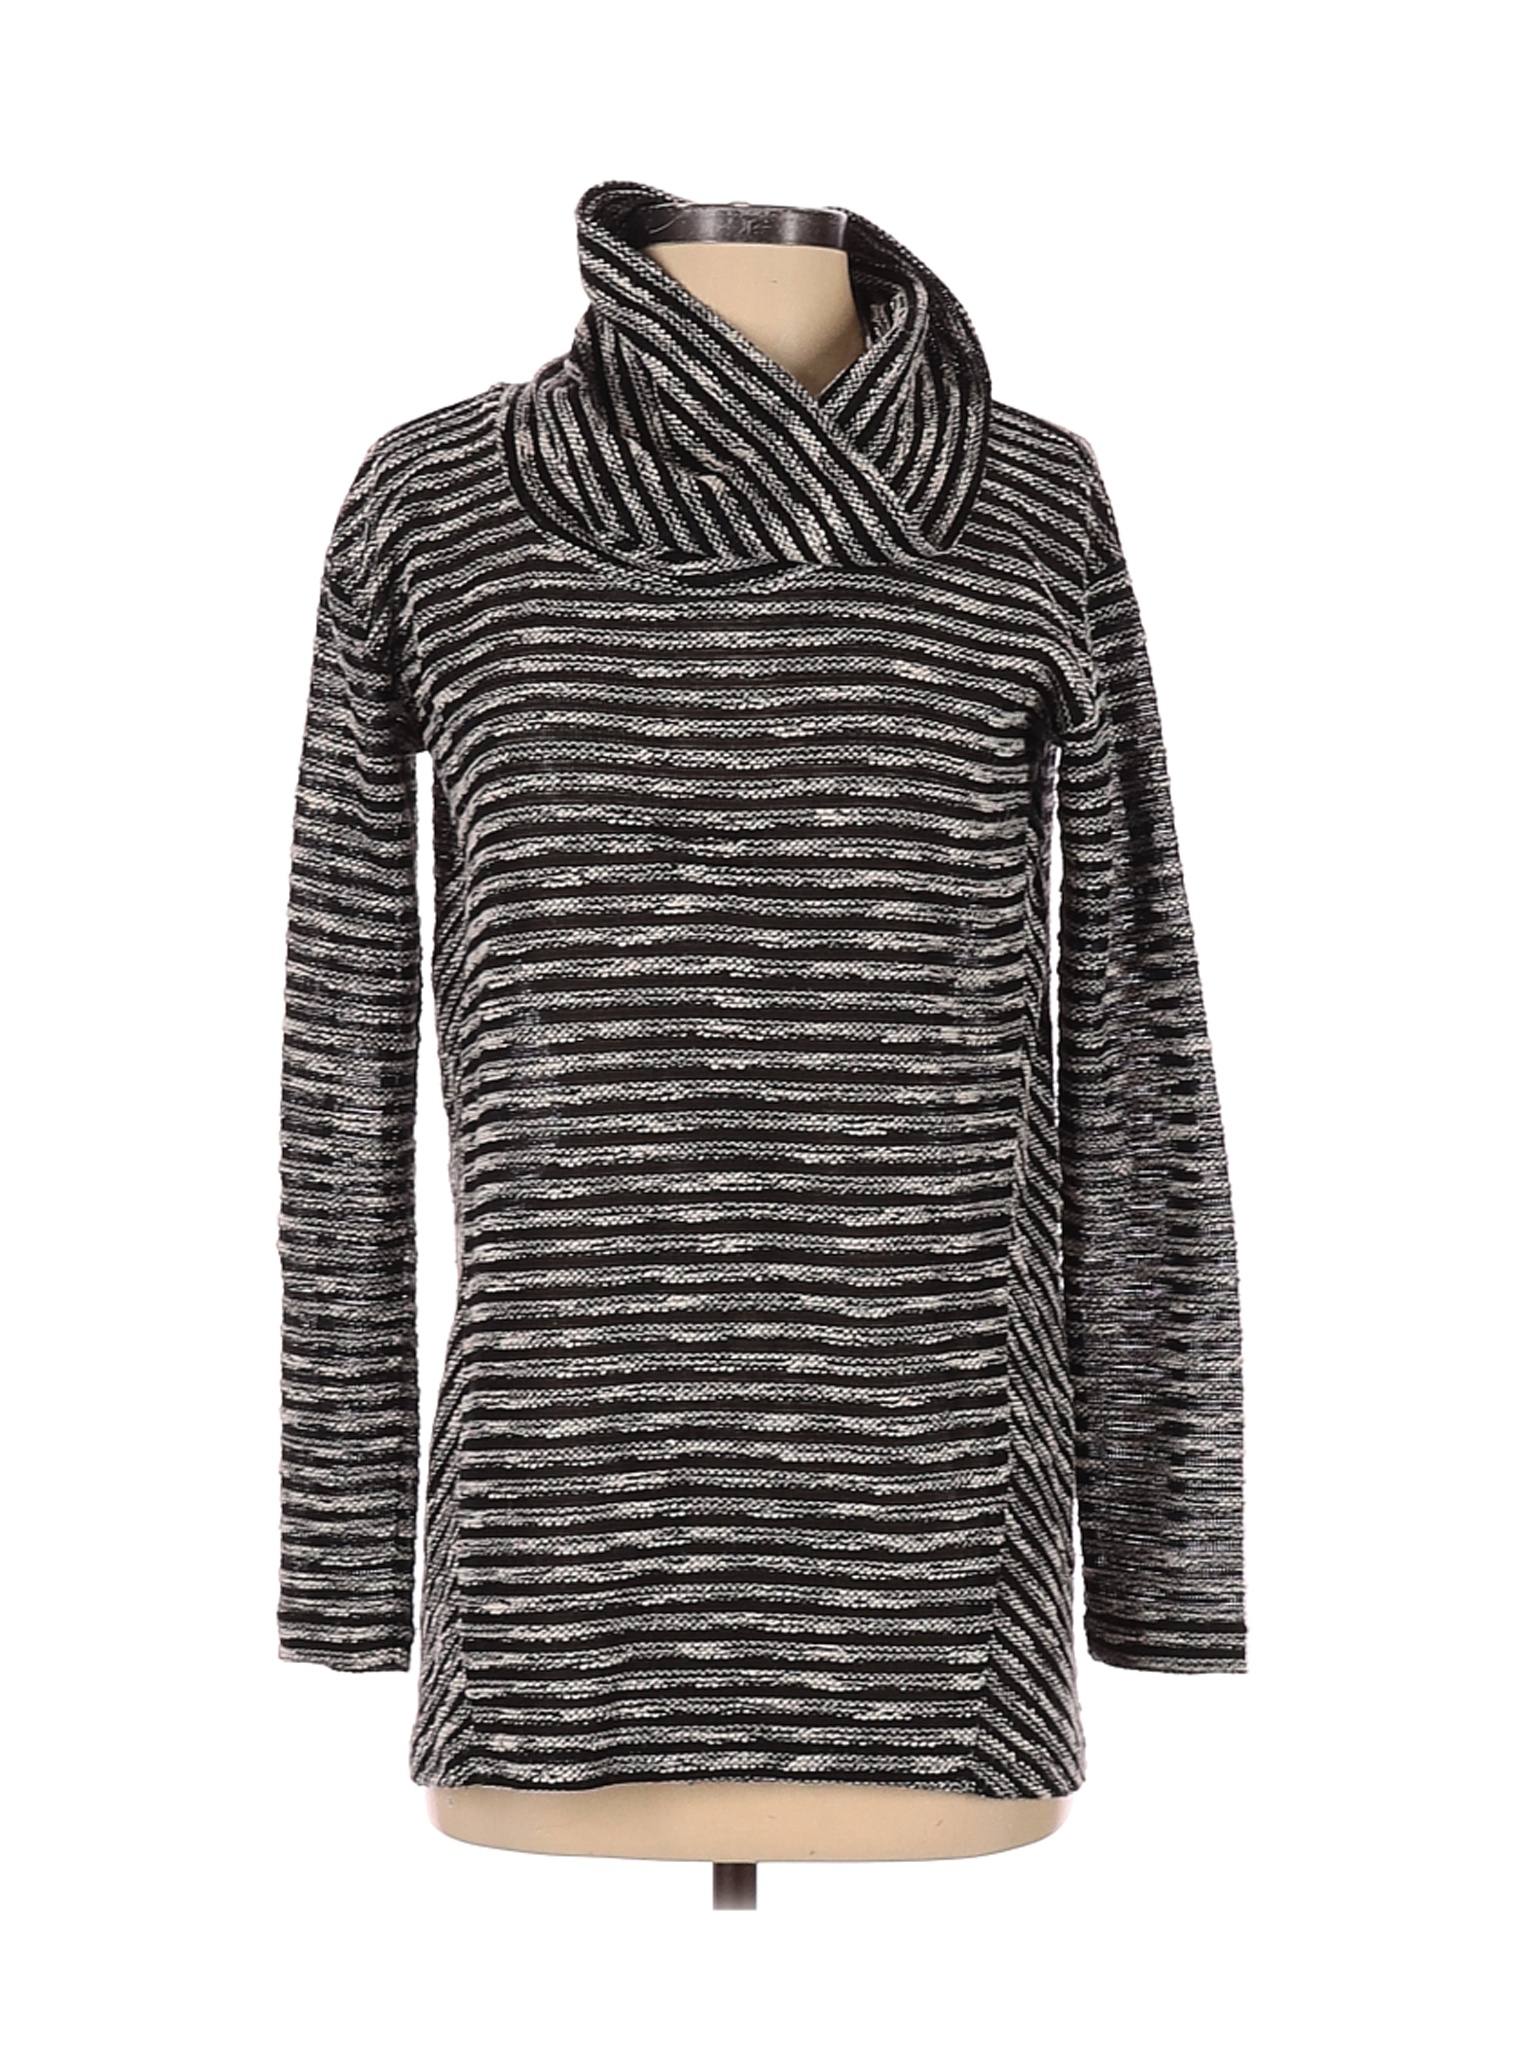 J.Jill Women Black Turtleneck Sweater XS | eBay